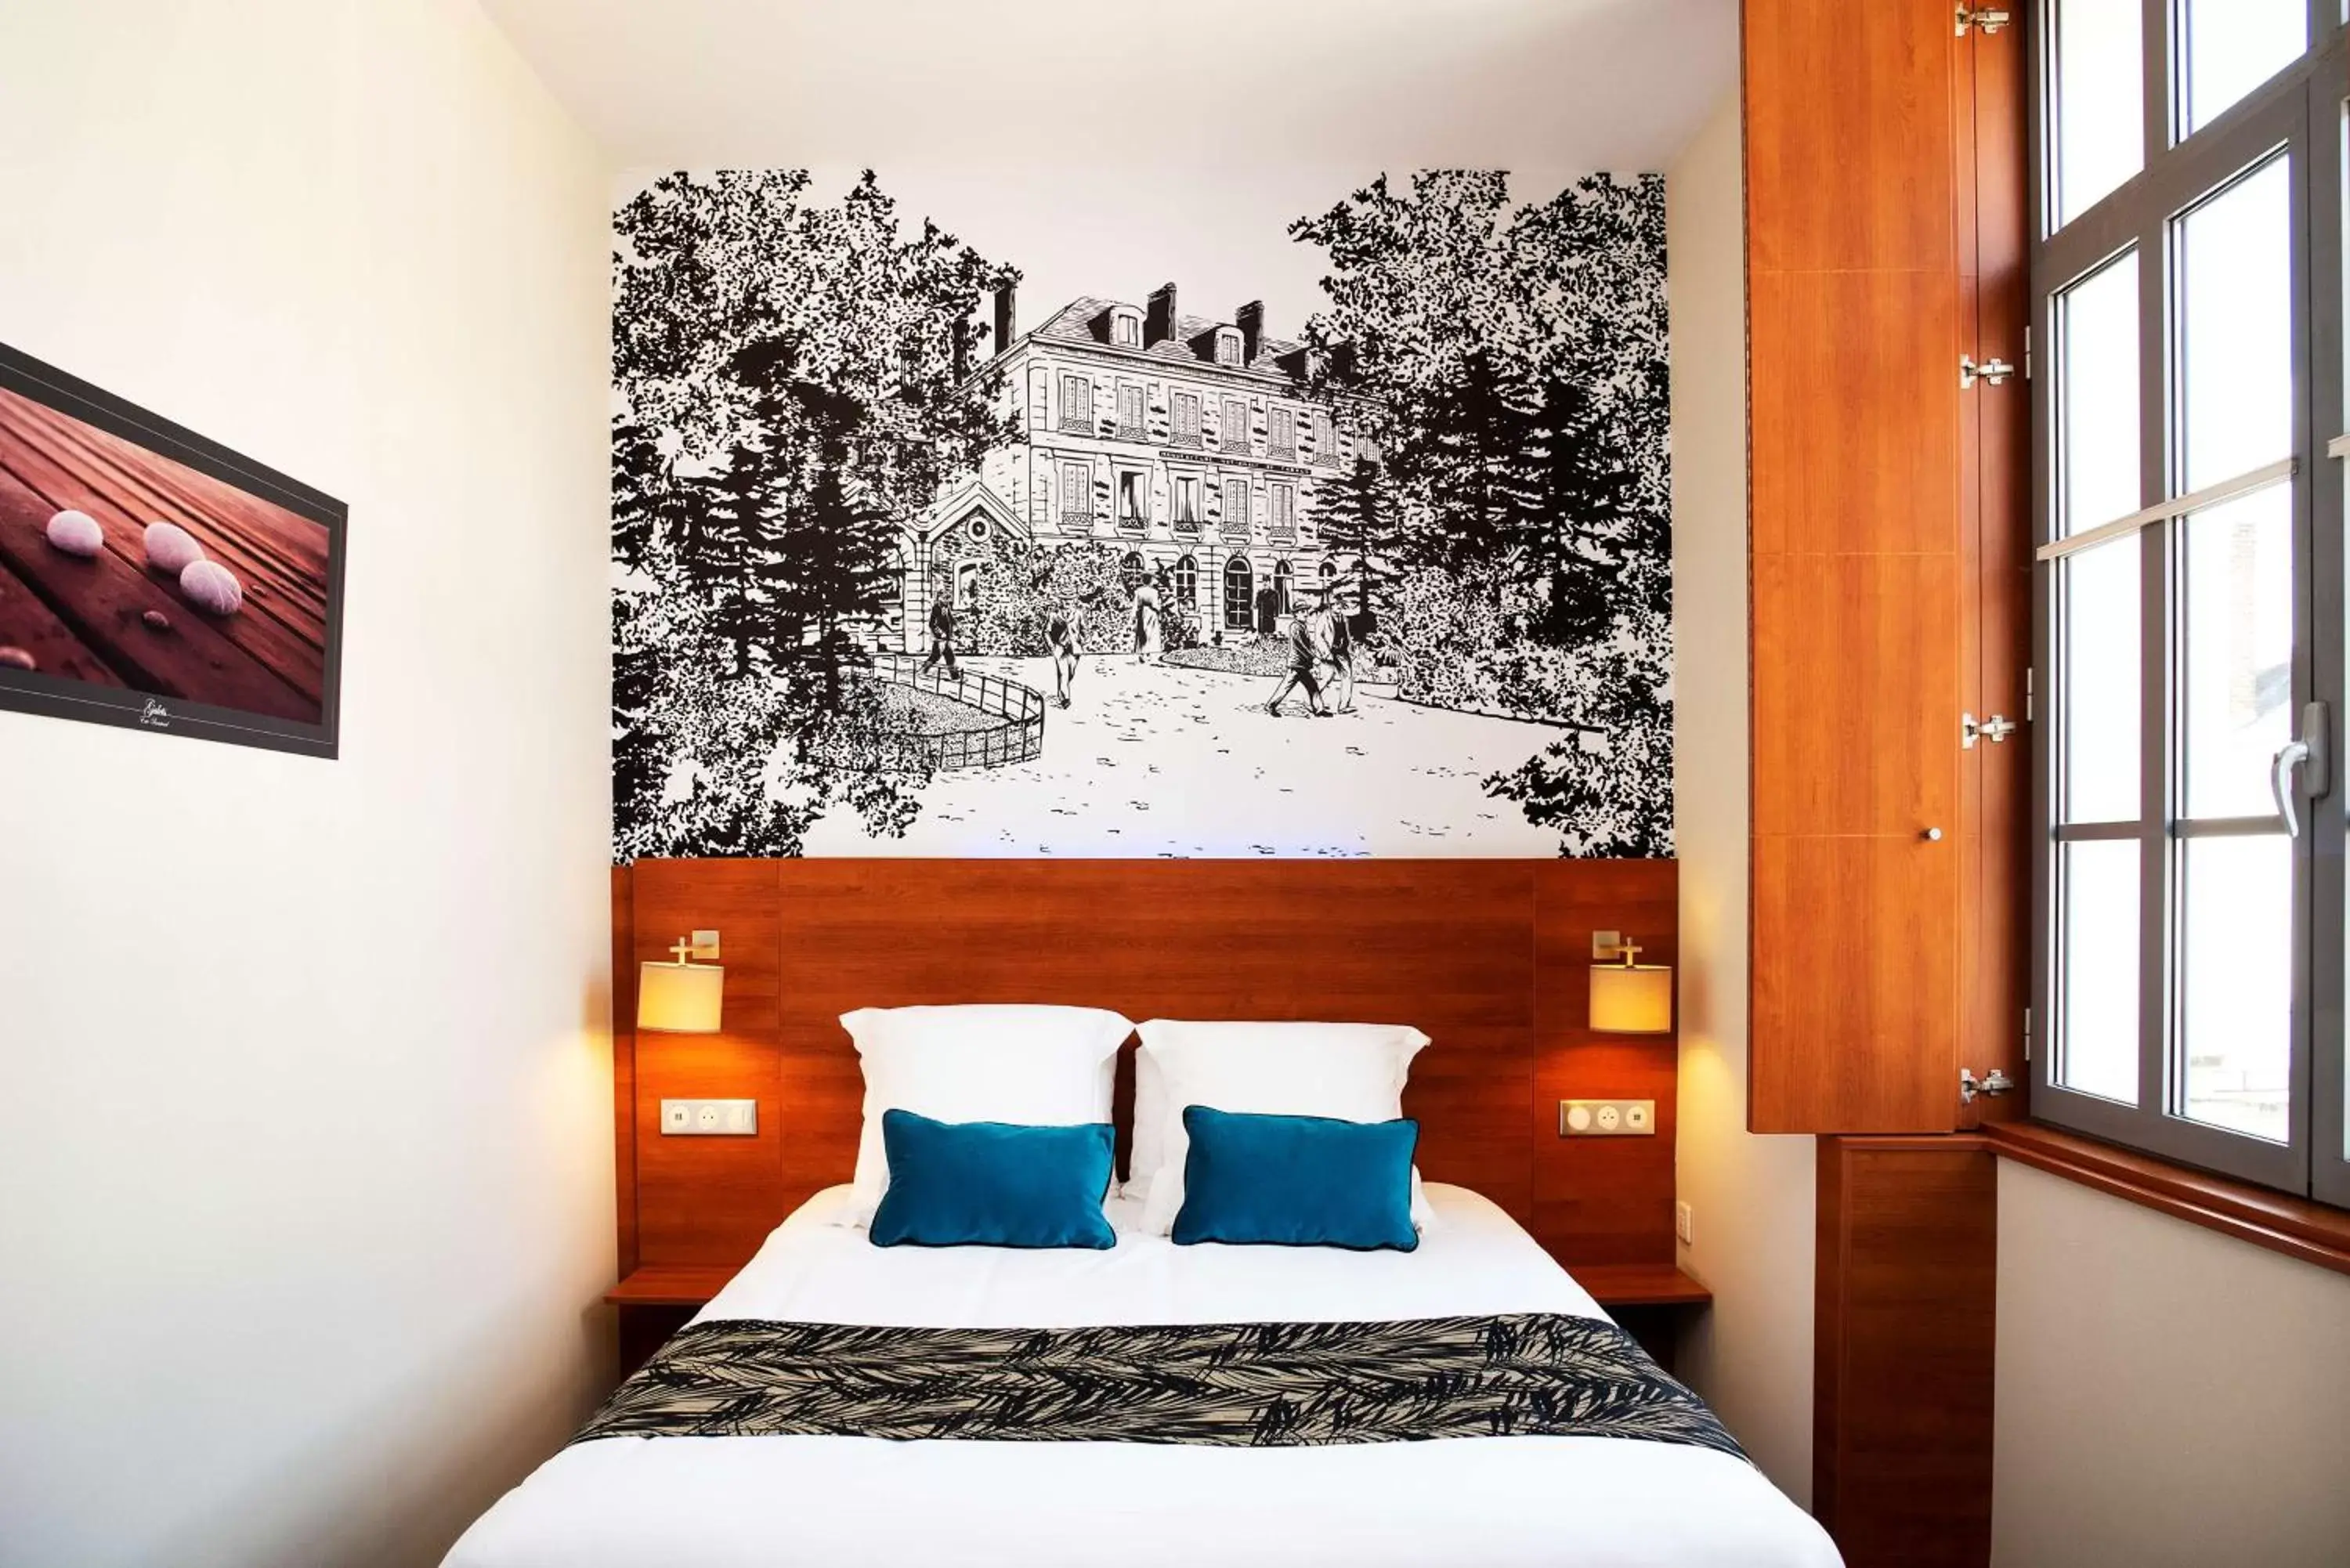 Decorative detail, Bed in Best Western Plus Hôtel Colbert